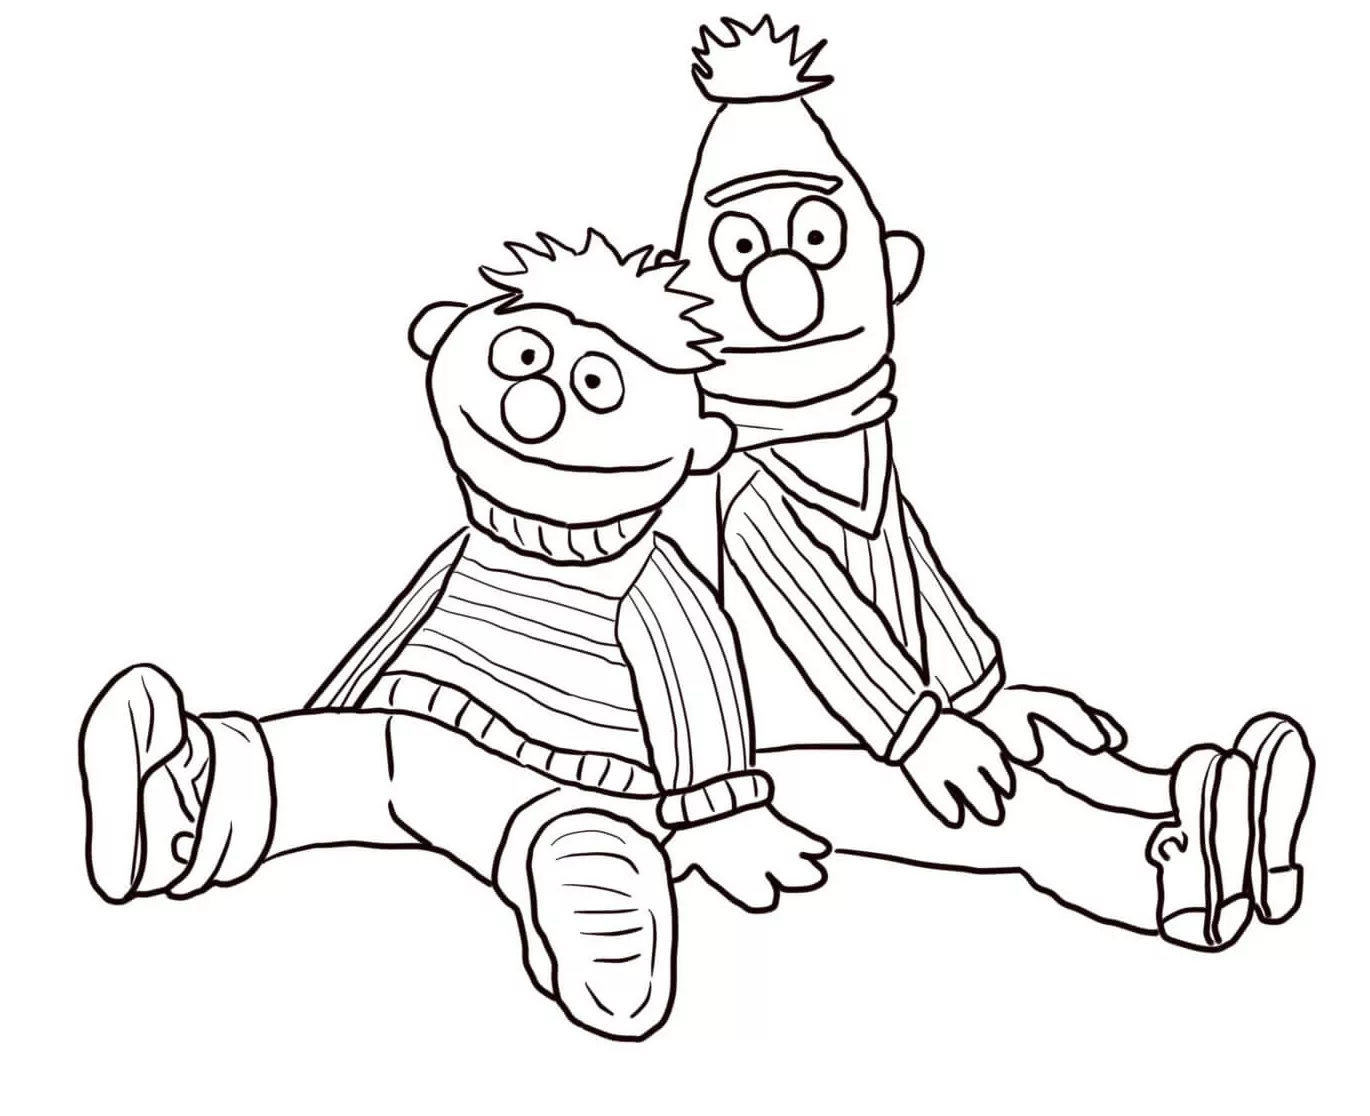 Bert und Ernie sitzen